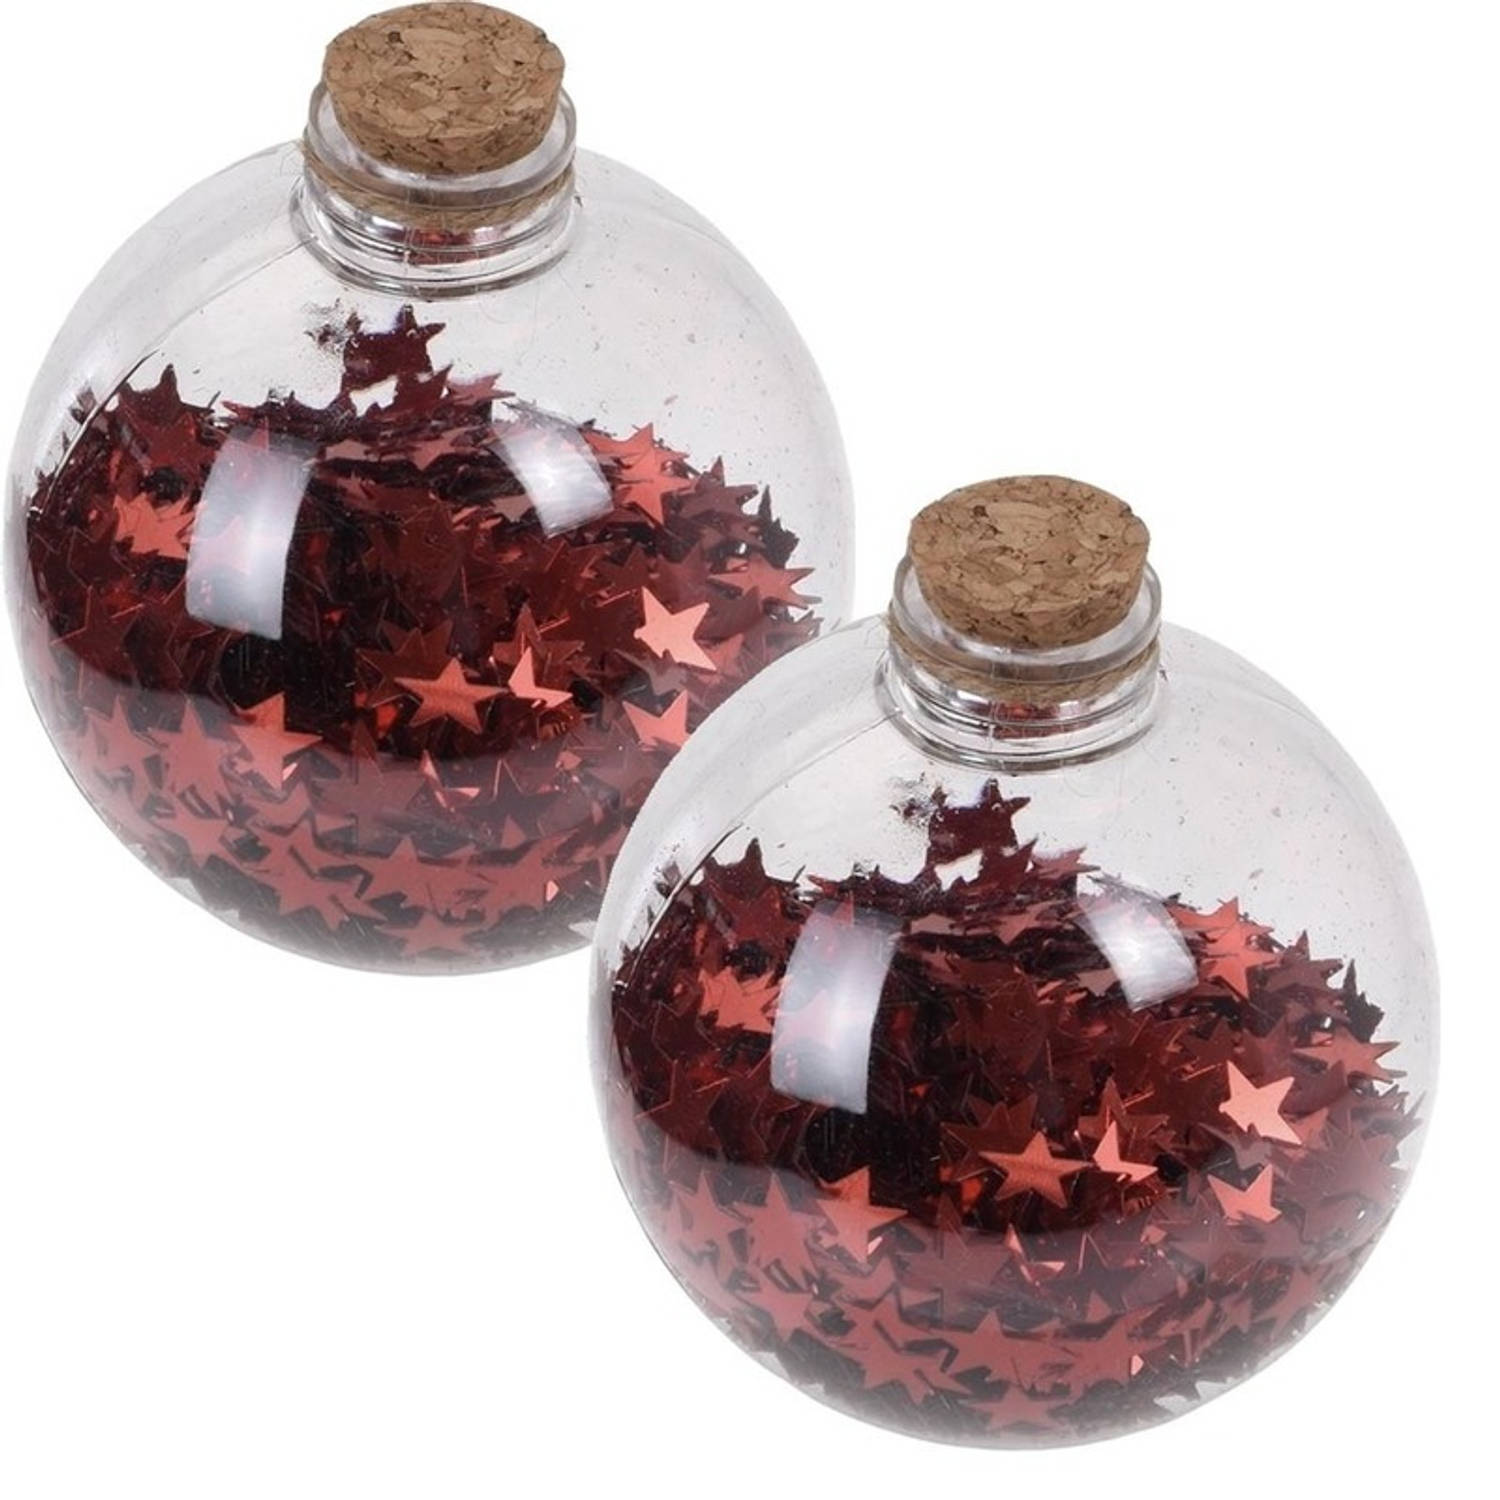 2x Transparante Fles Kerstballen Met Rode Sterren 8 Cm Onbreekbare Kerstballen Kerstboomversiering R